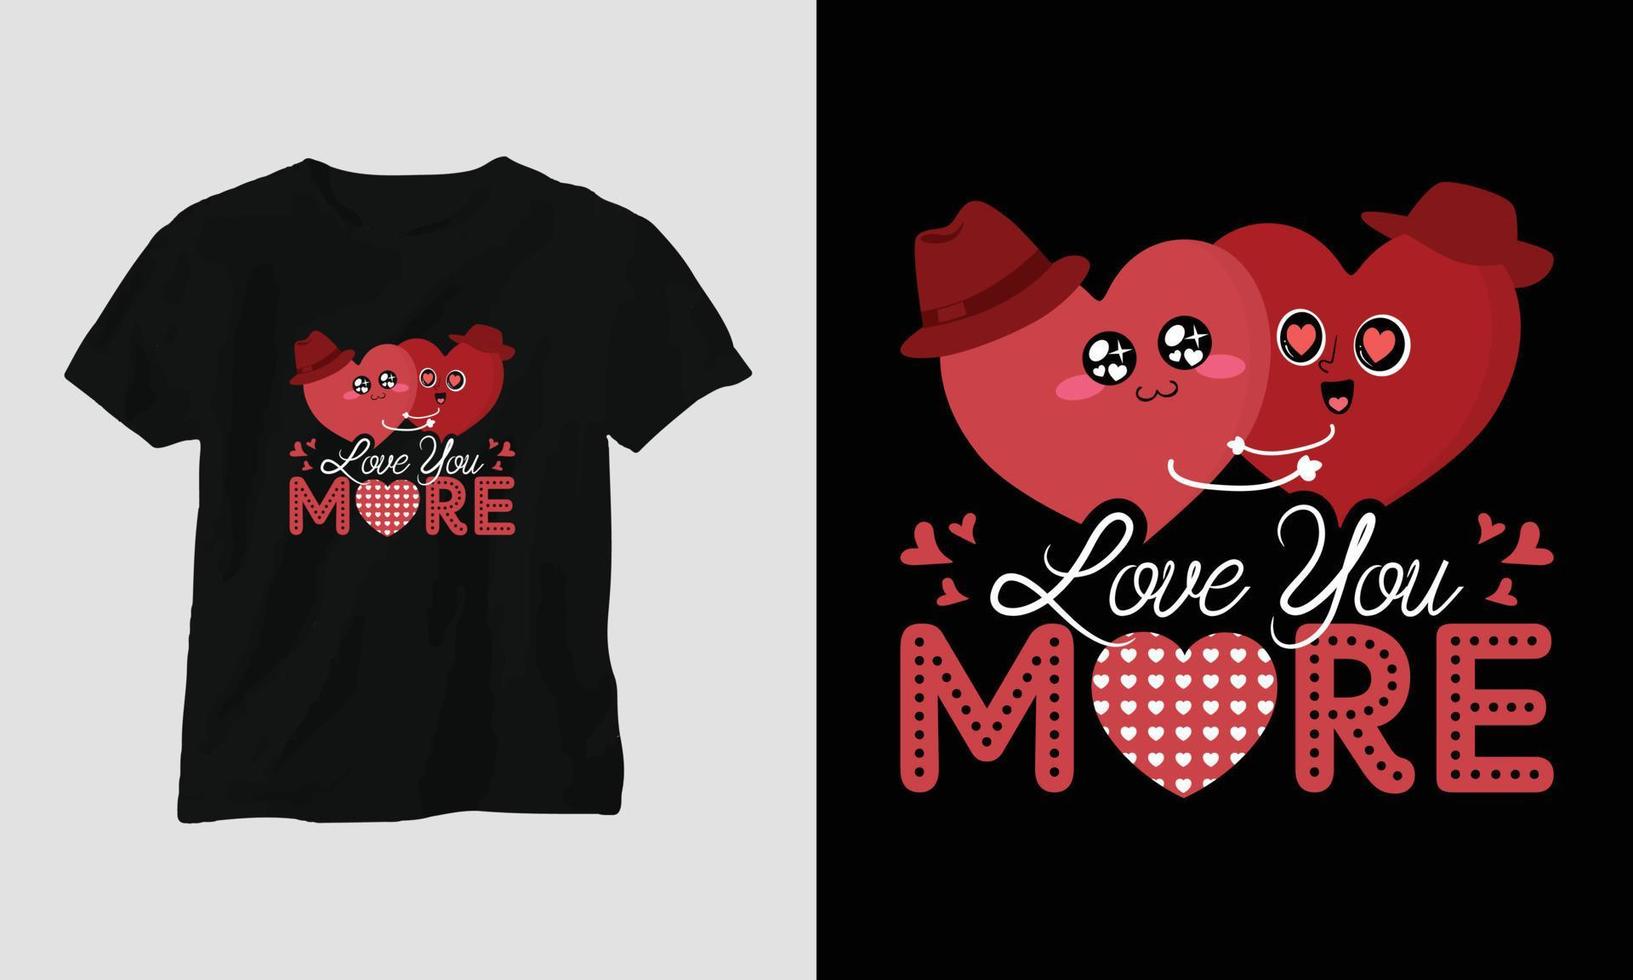 kärlek du Mer - hjärtans dag typografi t-shirt design med hjärta, pil, kyss, och motiverande citat vektor